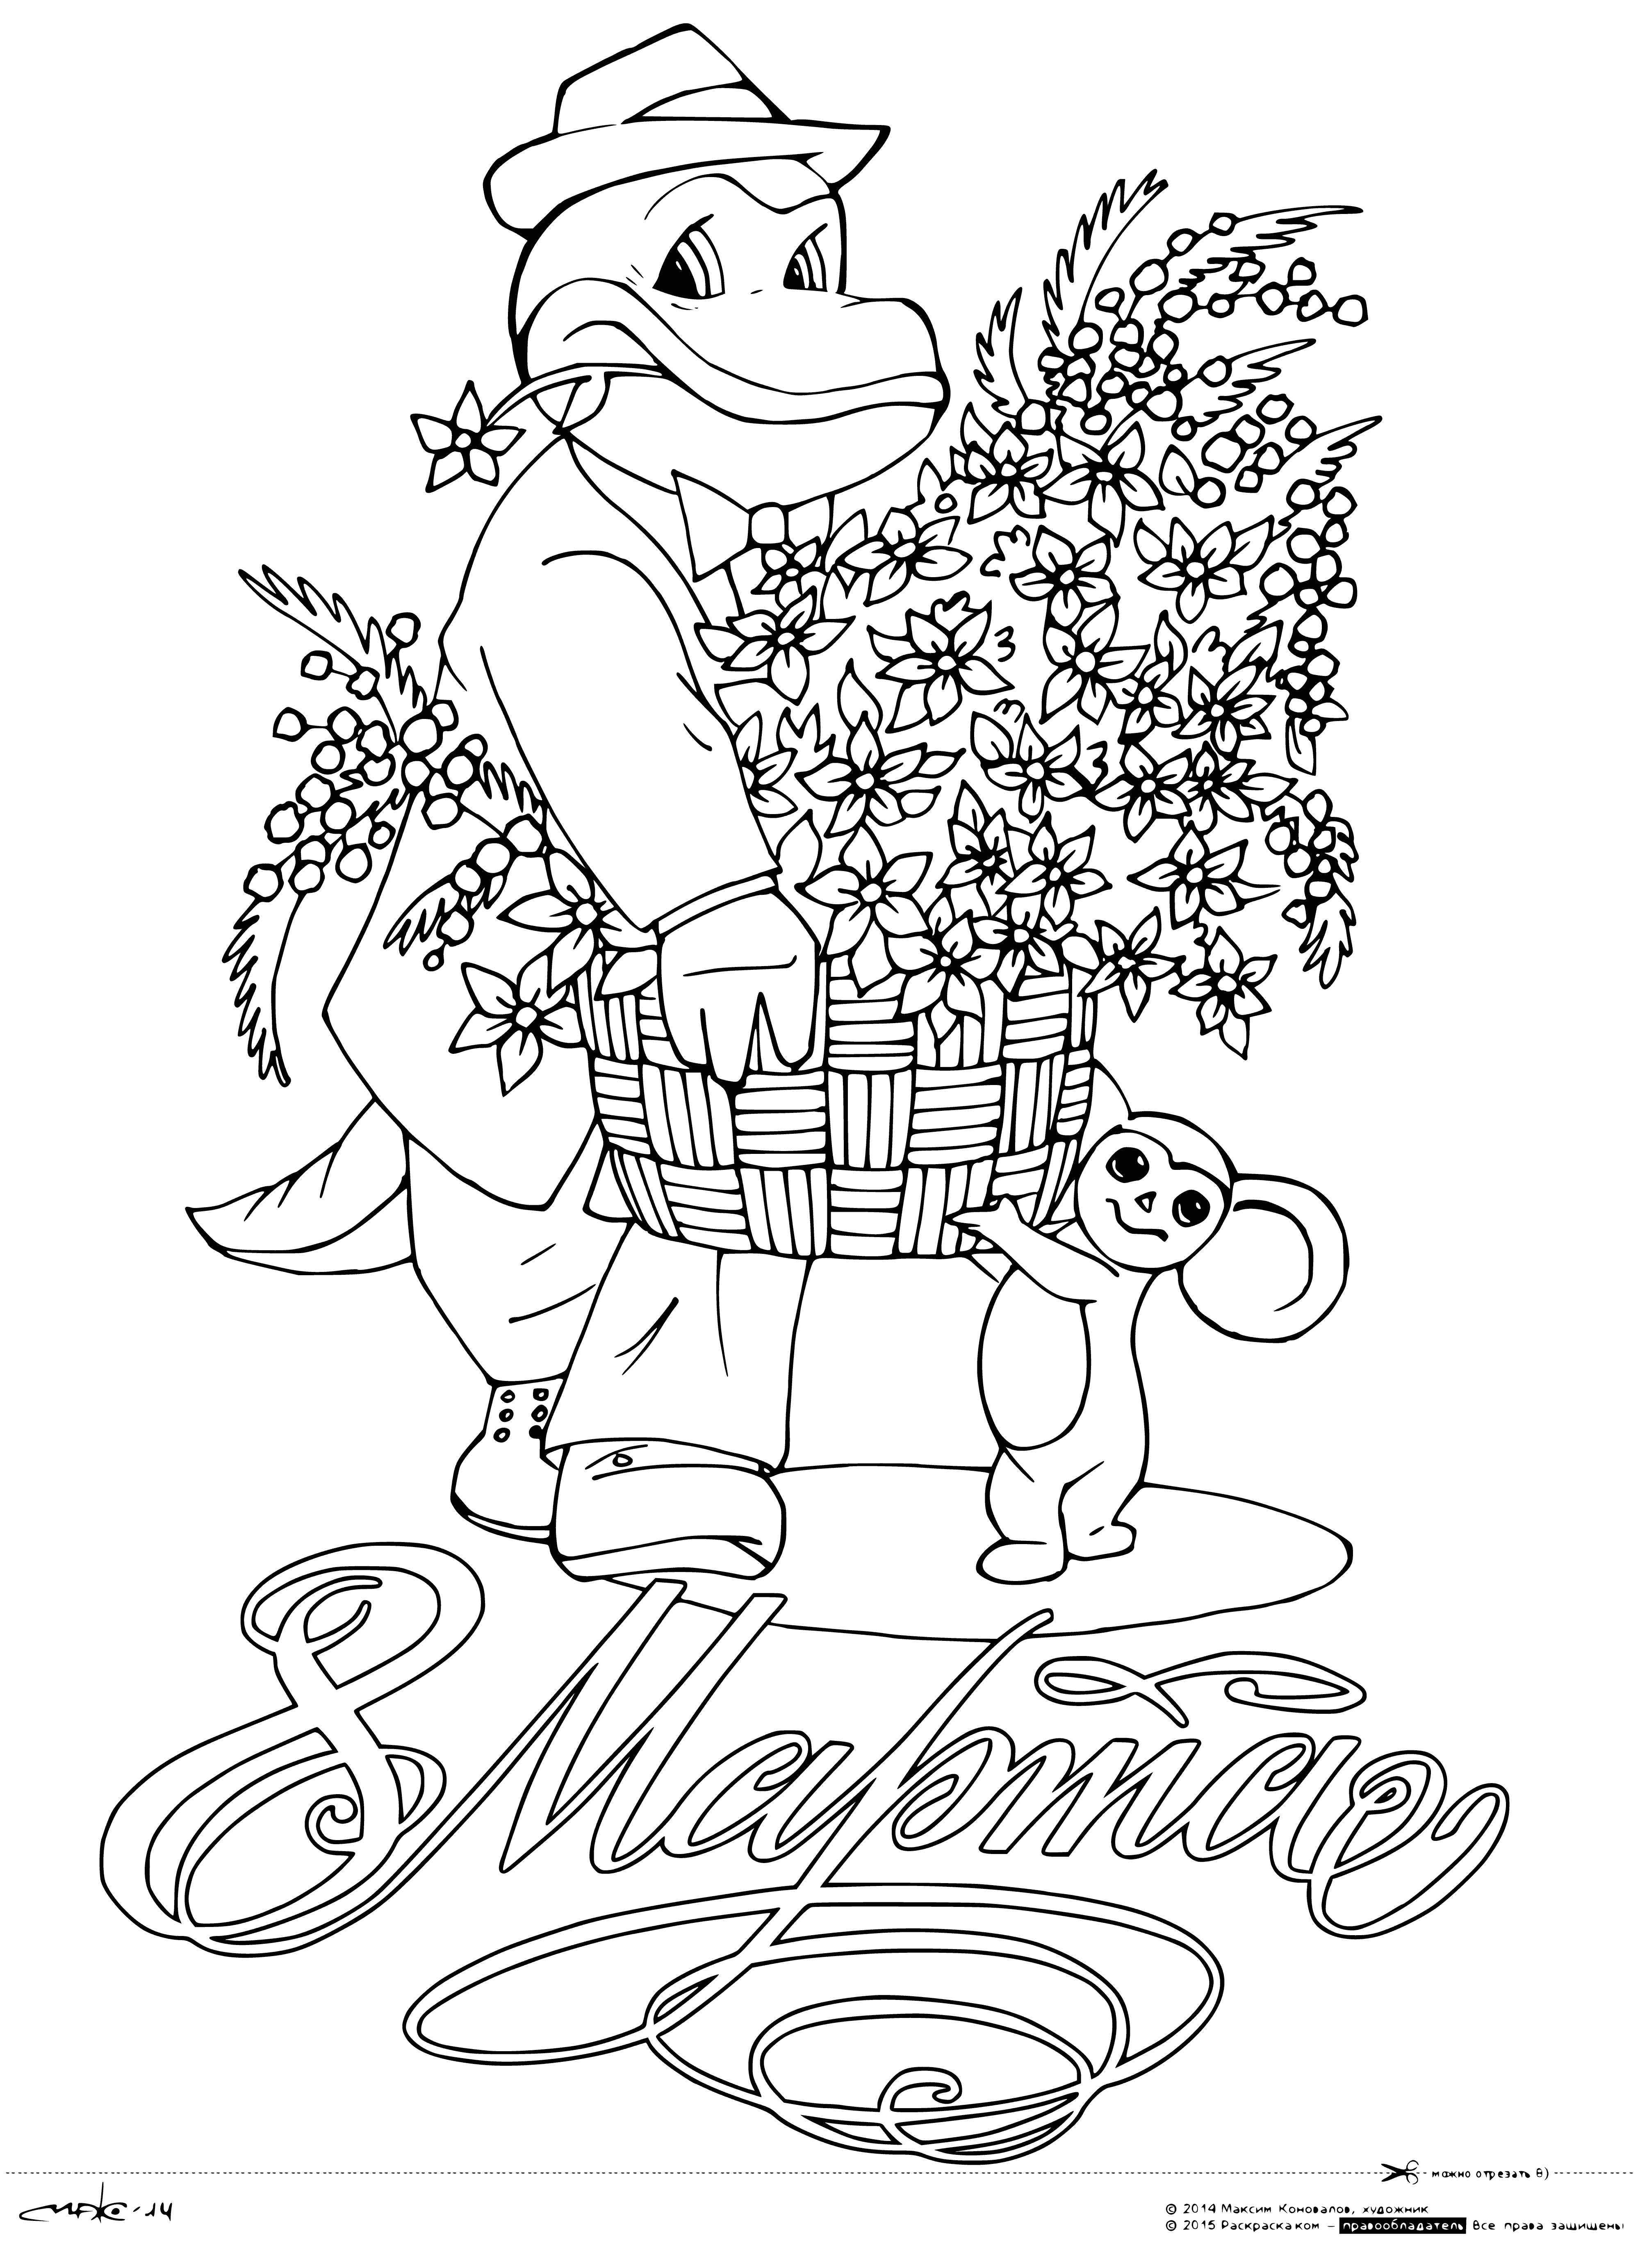 جينا و Cheburashka مع سلة من الزهور صفحة التلوين